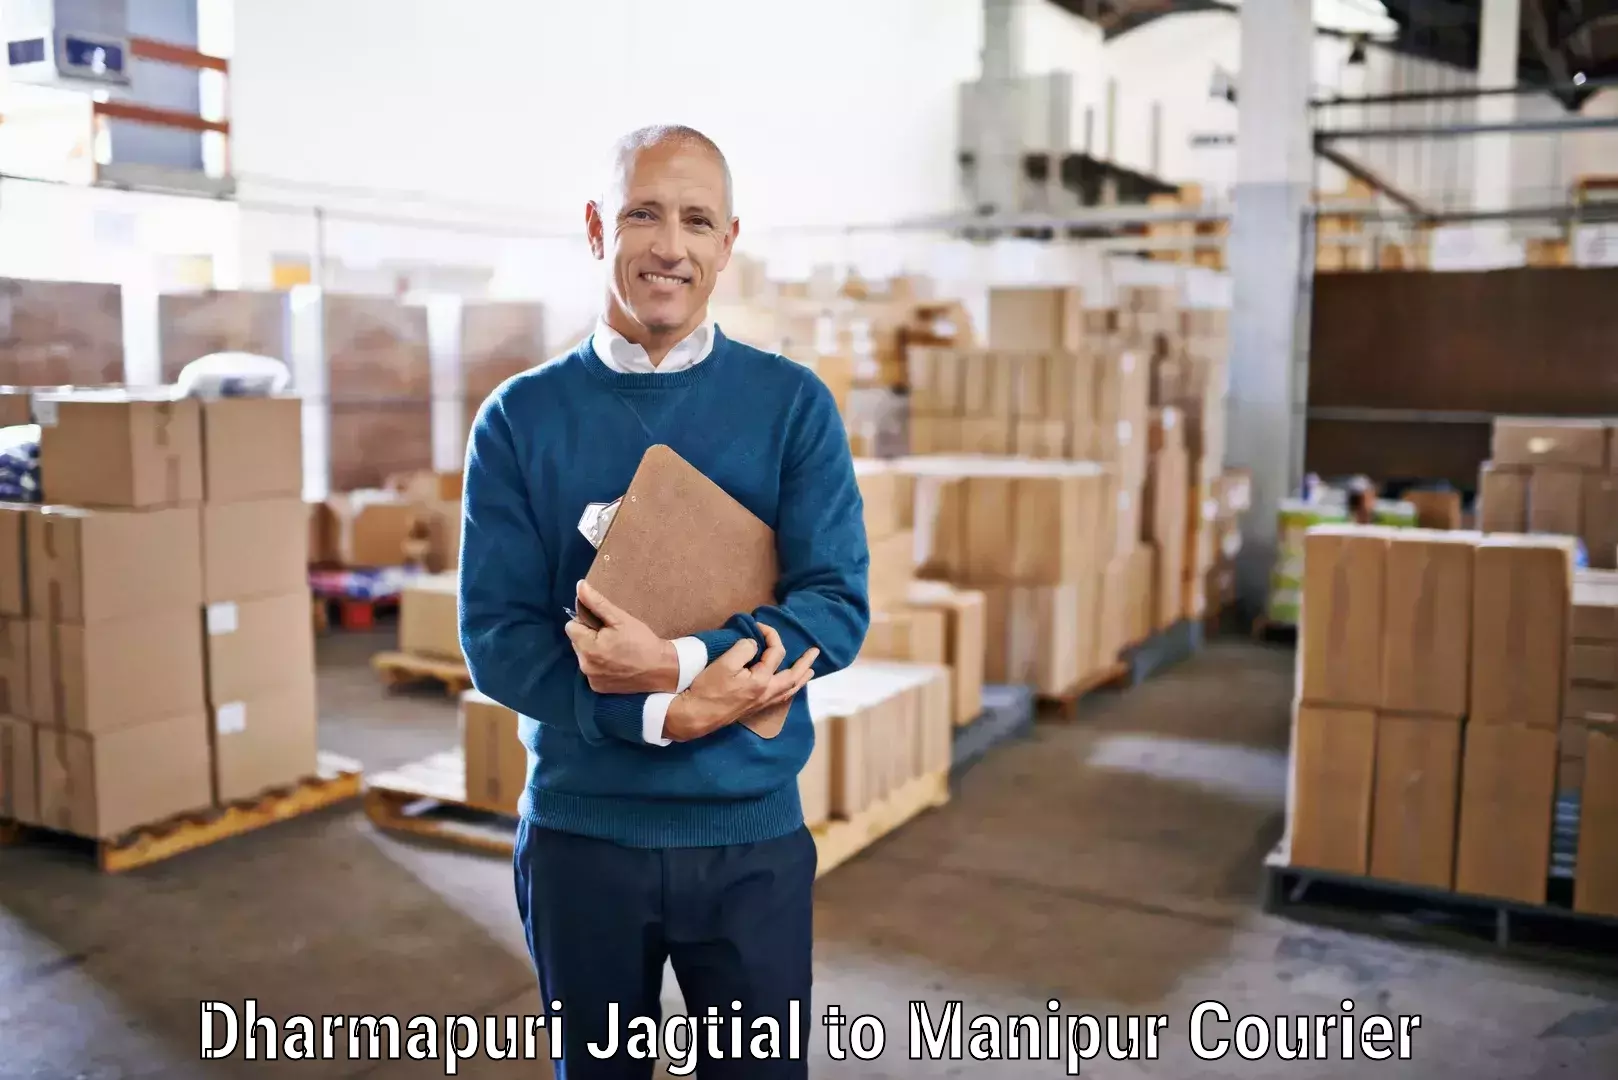 On-demand courier Dharmapuri Jagtial to Moirang